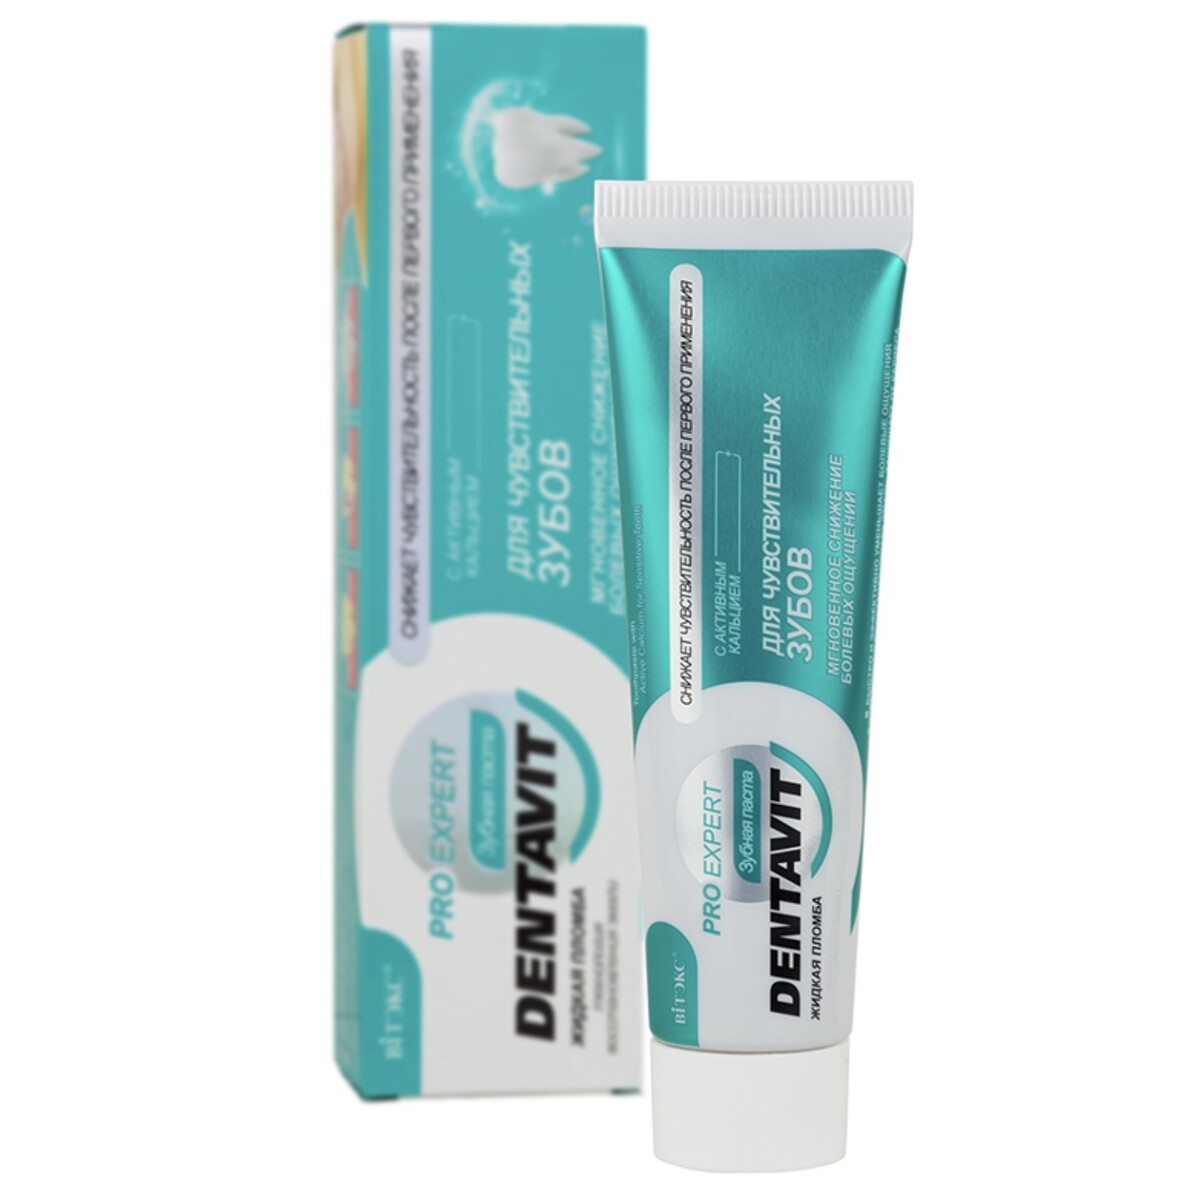 Dentavit pro expert зубная паста для чувствительных зубов с активным кальцием, 85 г.+ коробка dentavit pro expert зубная паста пародонт актив с антибакт комплексом 85 г коробка